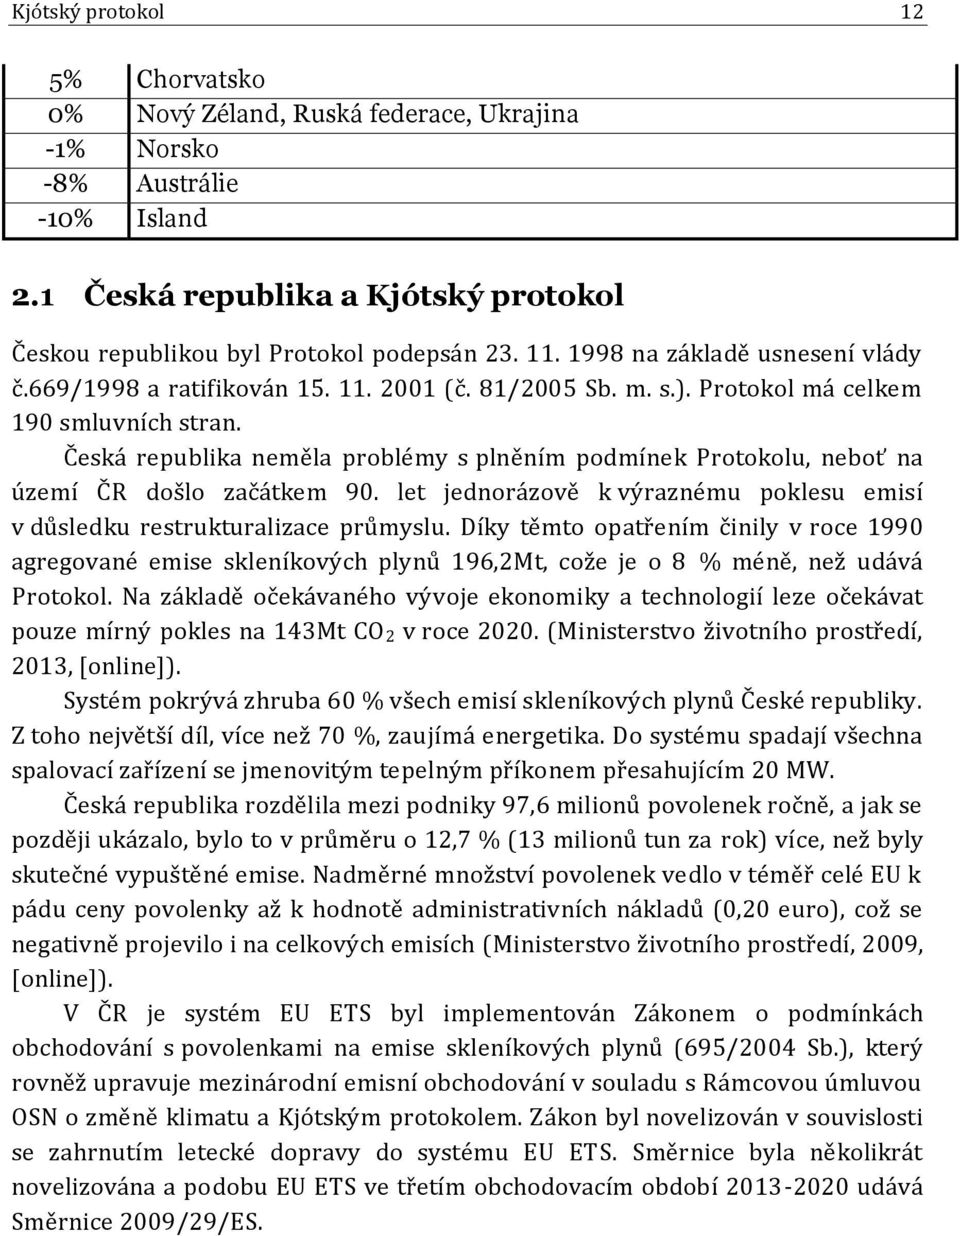 Česká republika neměla problémy s plněním podmínek Protokolu, neboť na území ČR došlo začátkem 90. let jednorázově k výraznému poklesu emisí v důsledku restrukturalizace průmyslu.